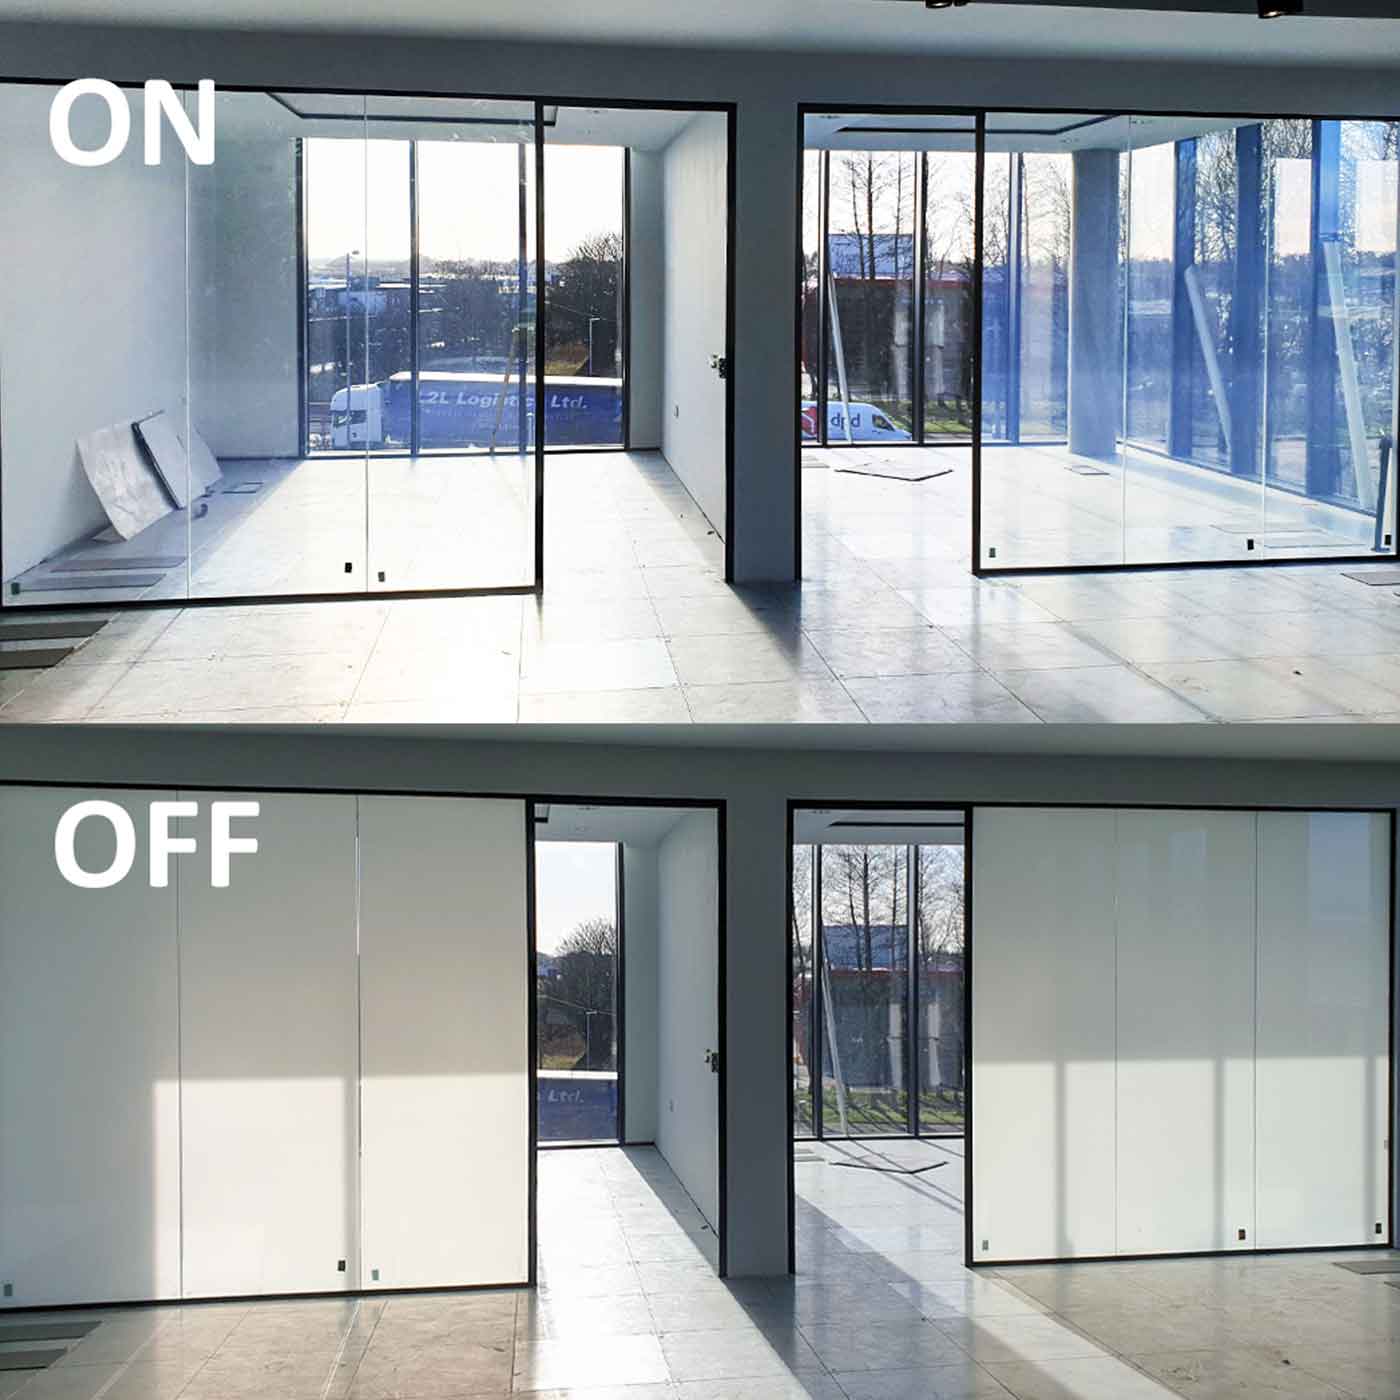 شیشه های هوشمند با قابلیت مات شوندگی و تغییر رنگ برای افزایش حریم خصوصی